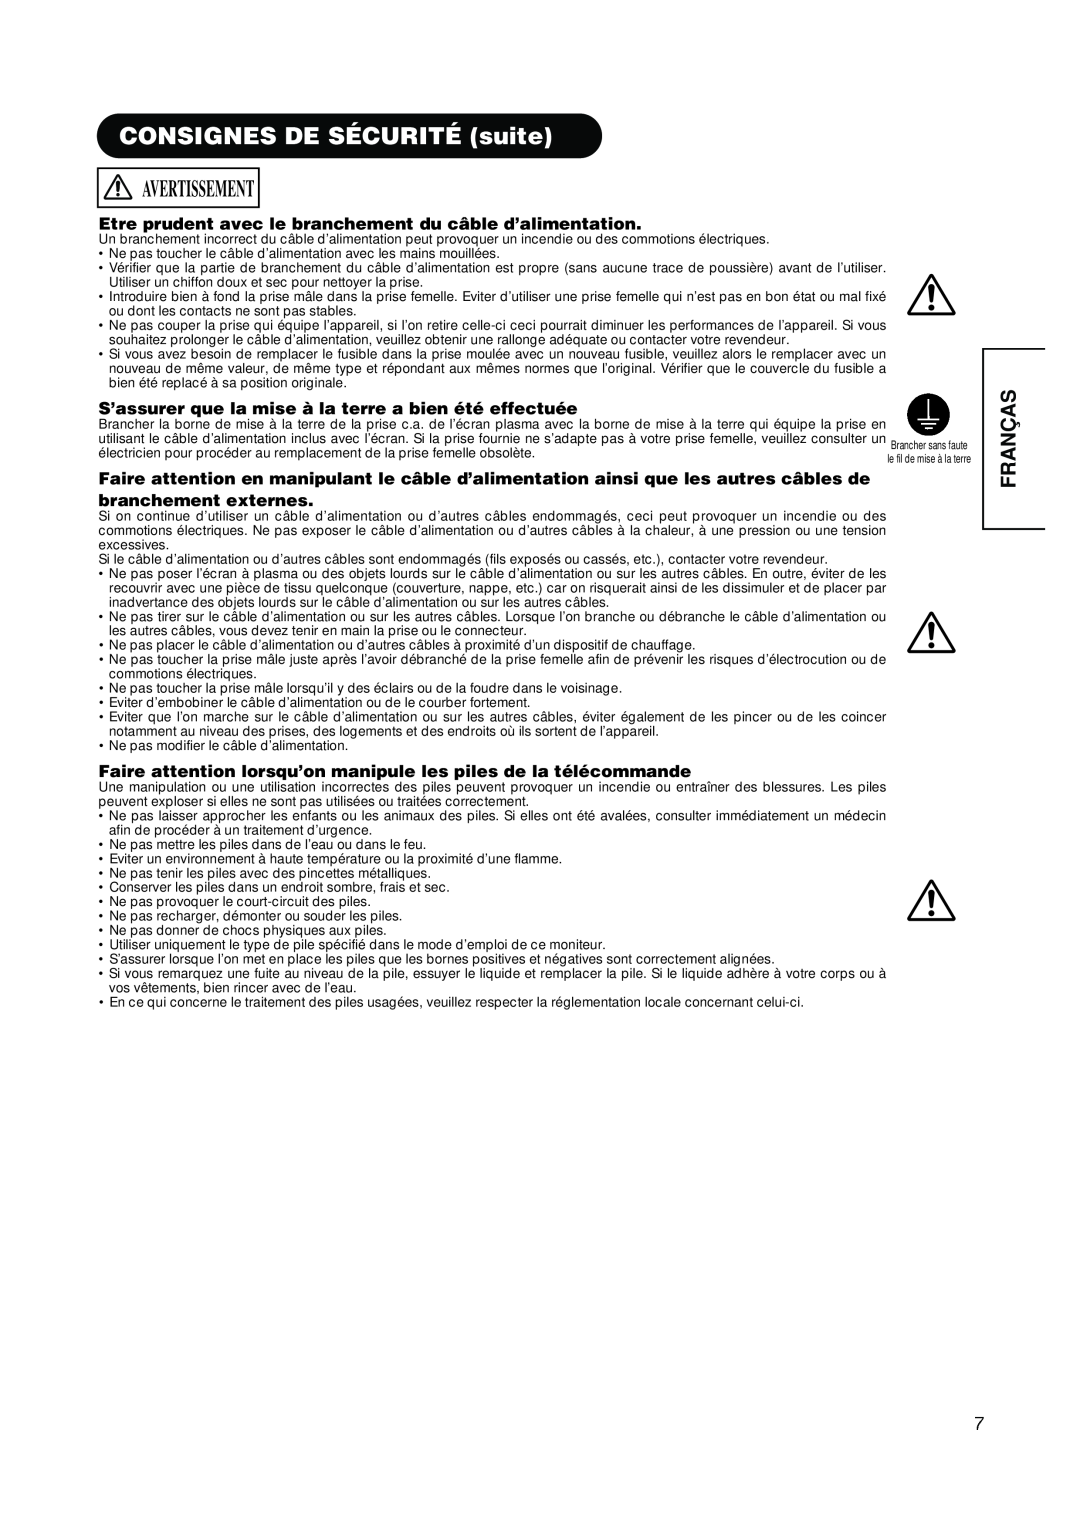 Hitachi PW1A CONSIGNES DE SÉCURITÉ suite, Avertissement, Franças, Etre prudent avec le branchement du câble d’alimentation 